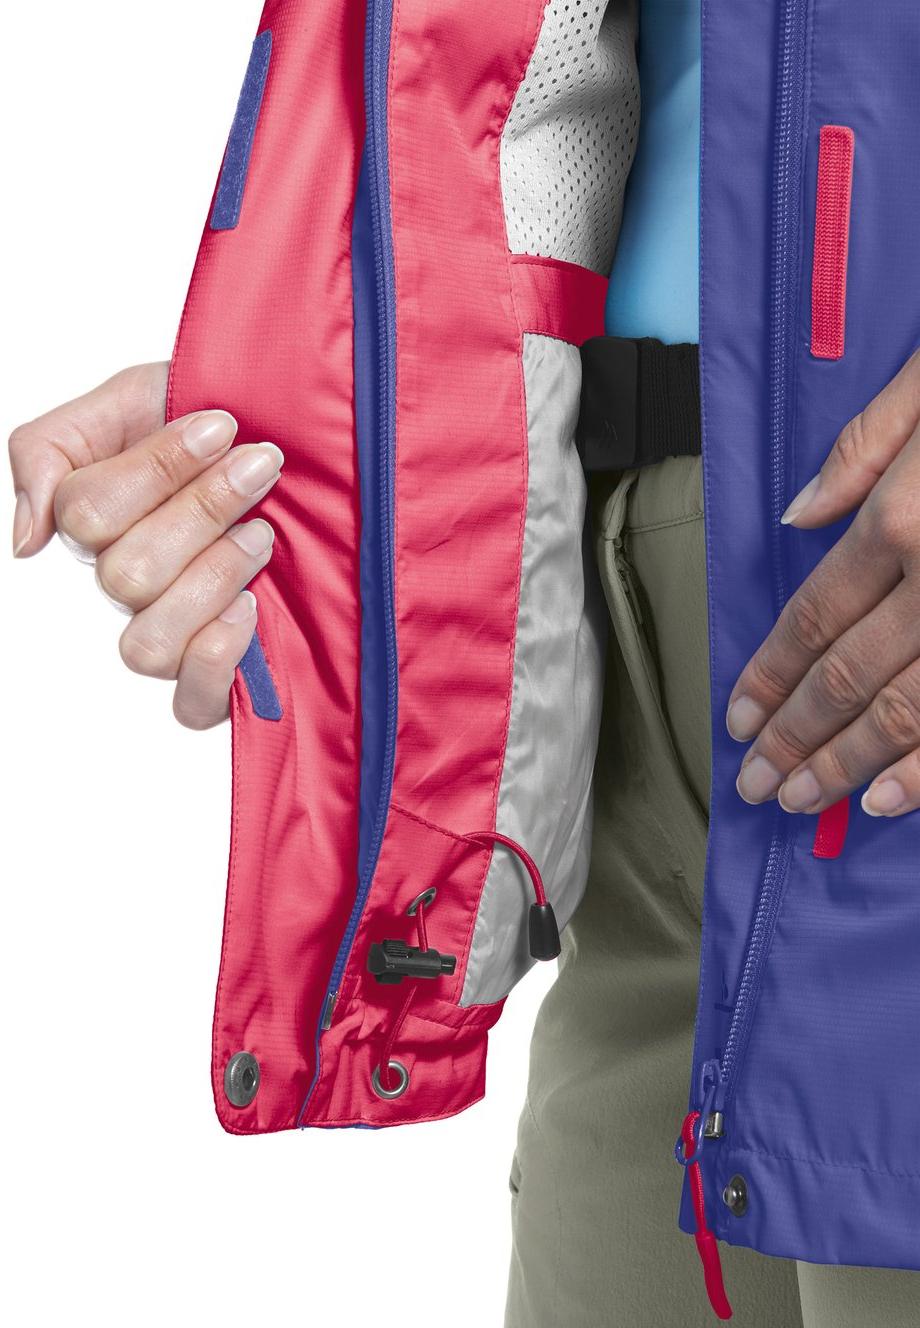 Спортивная куртка женская Maier Metor W фиолетовая 34 EU